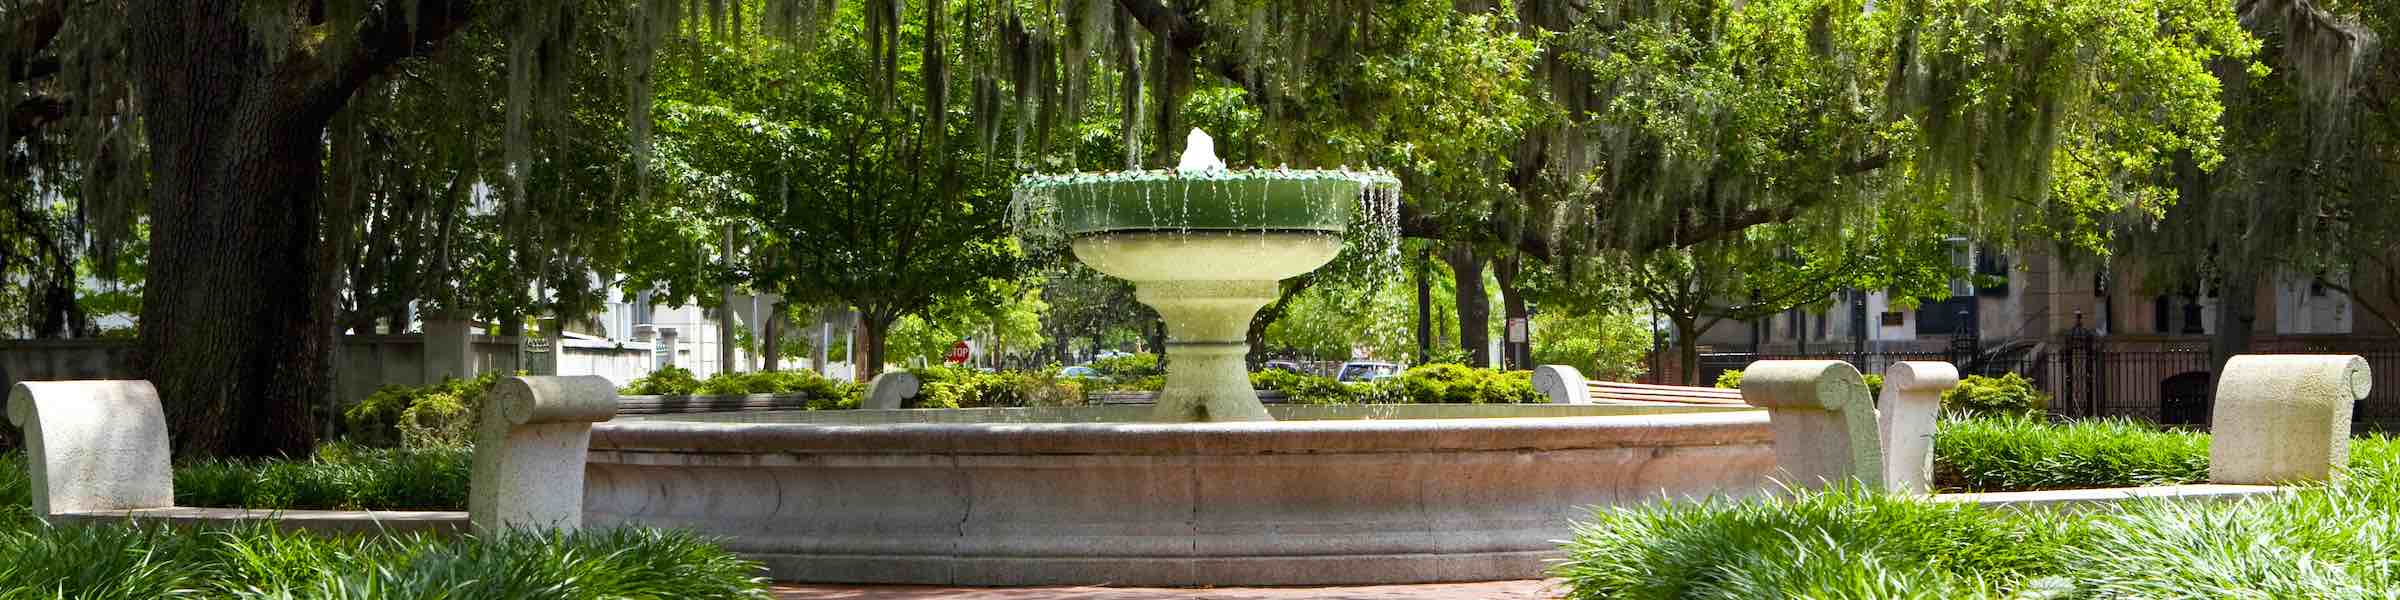 The German Memorial Fountain in Savannah, GA.